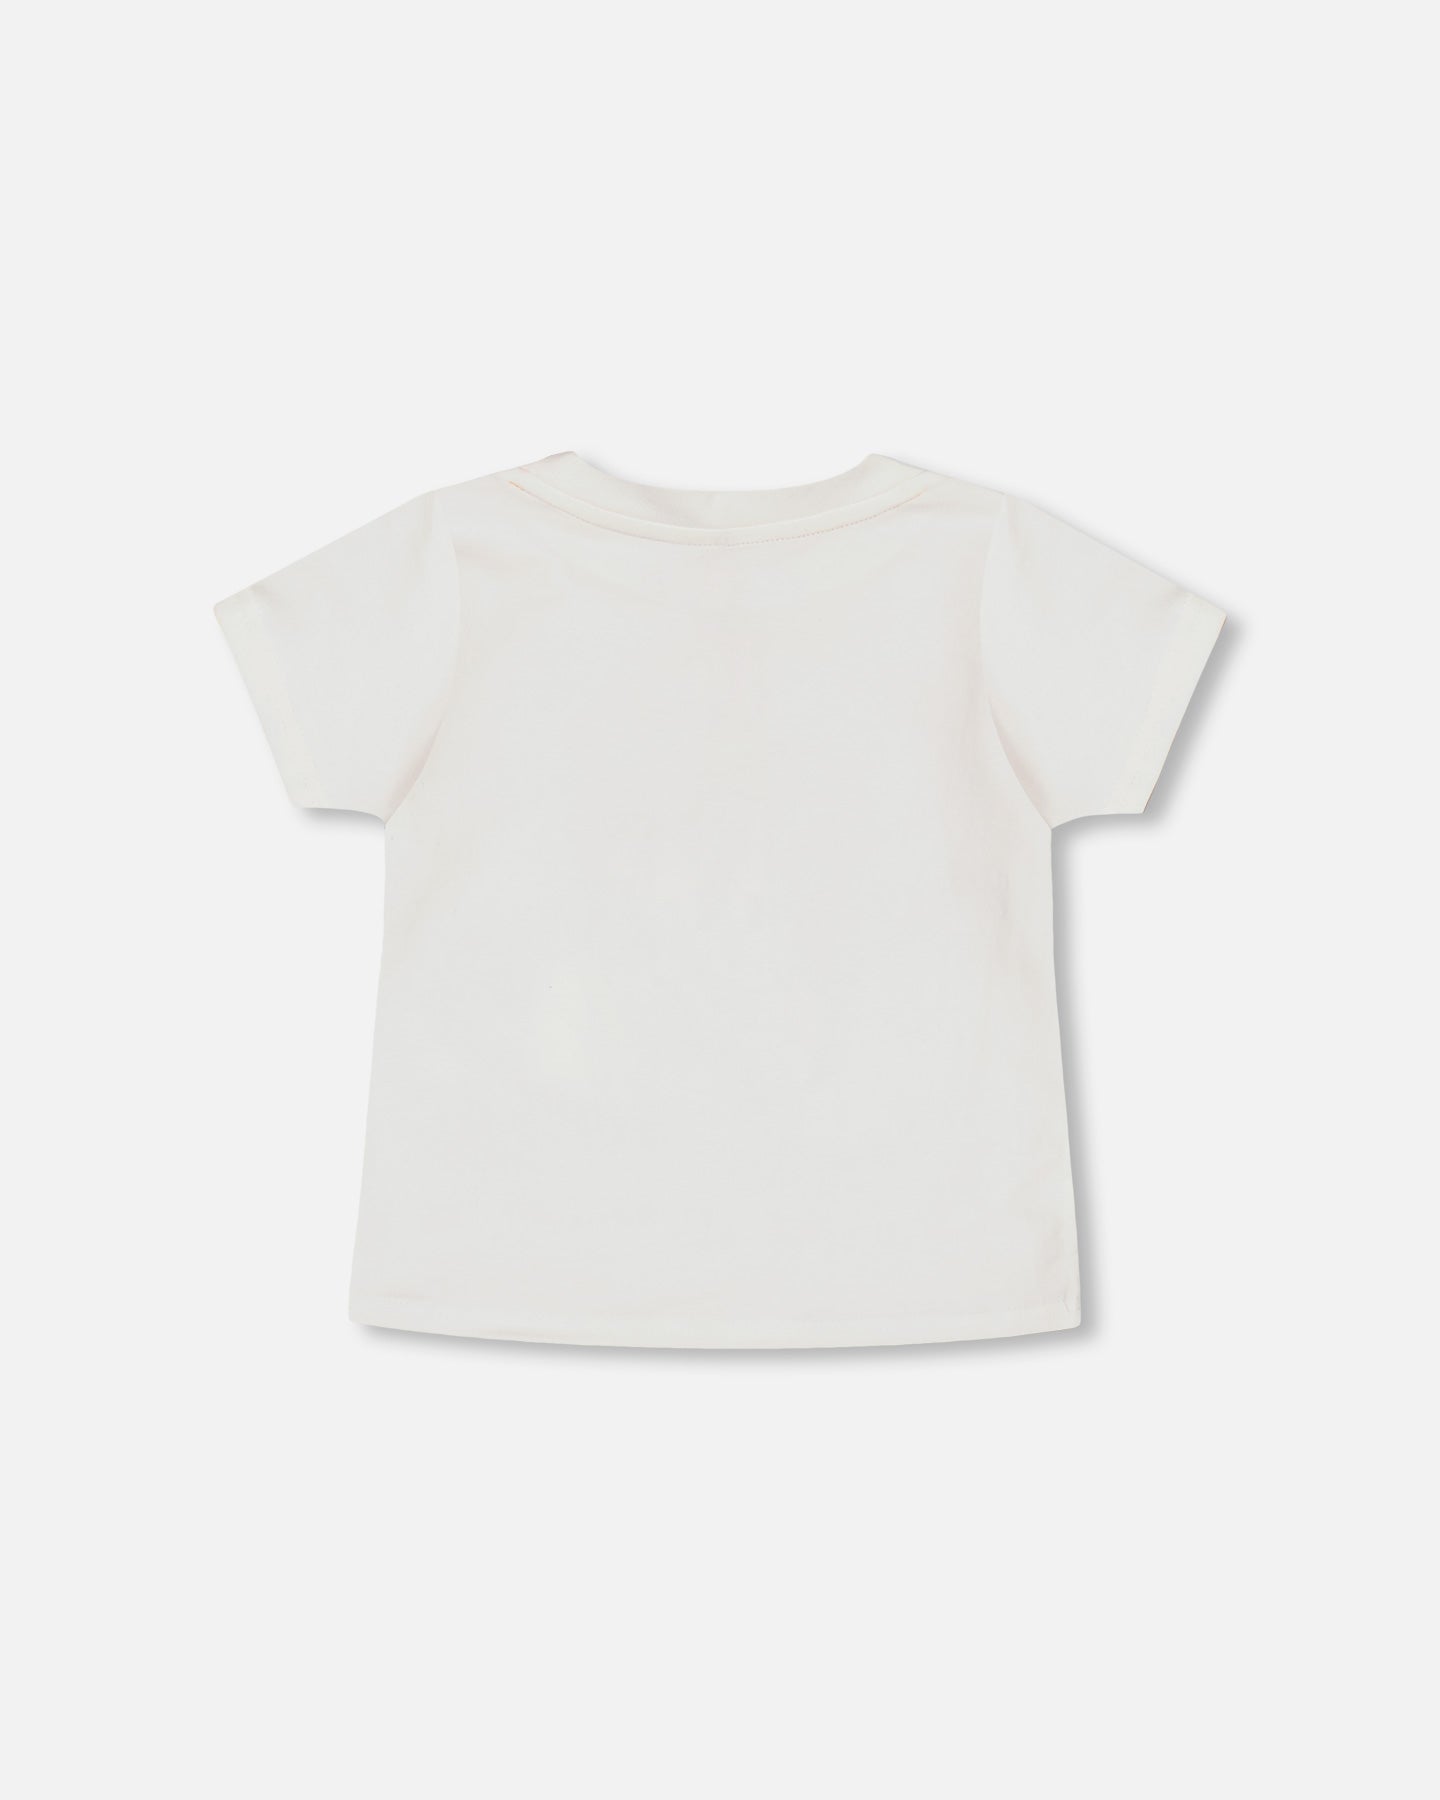 T-shirt avec imprimé graphique blanc cassé en coton biologique - F30T70-101 - 2 à 8 ans